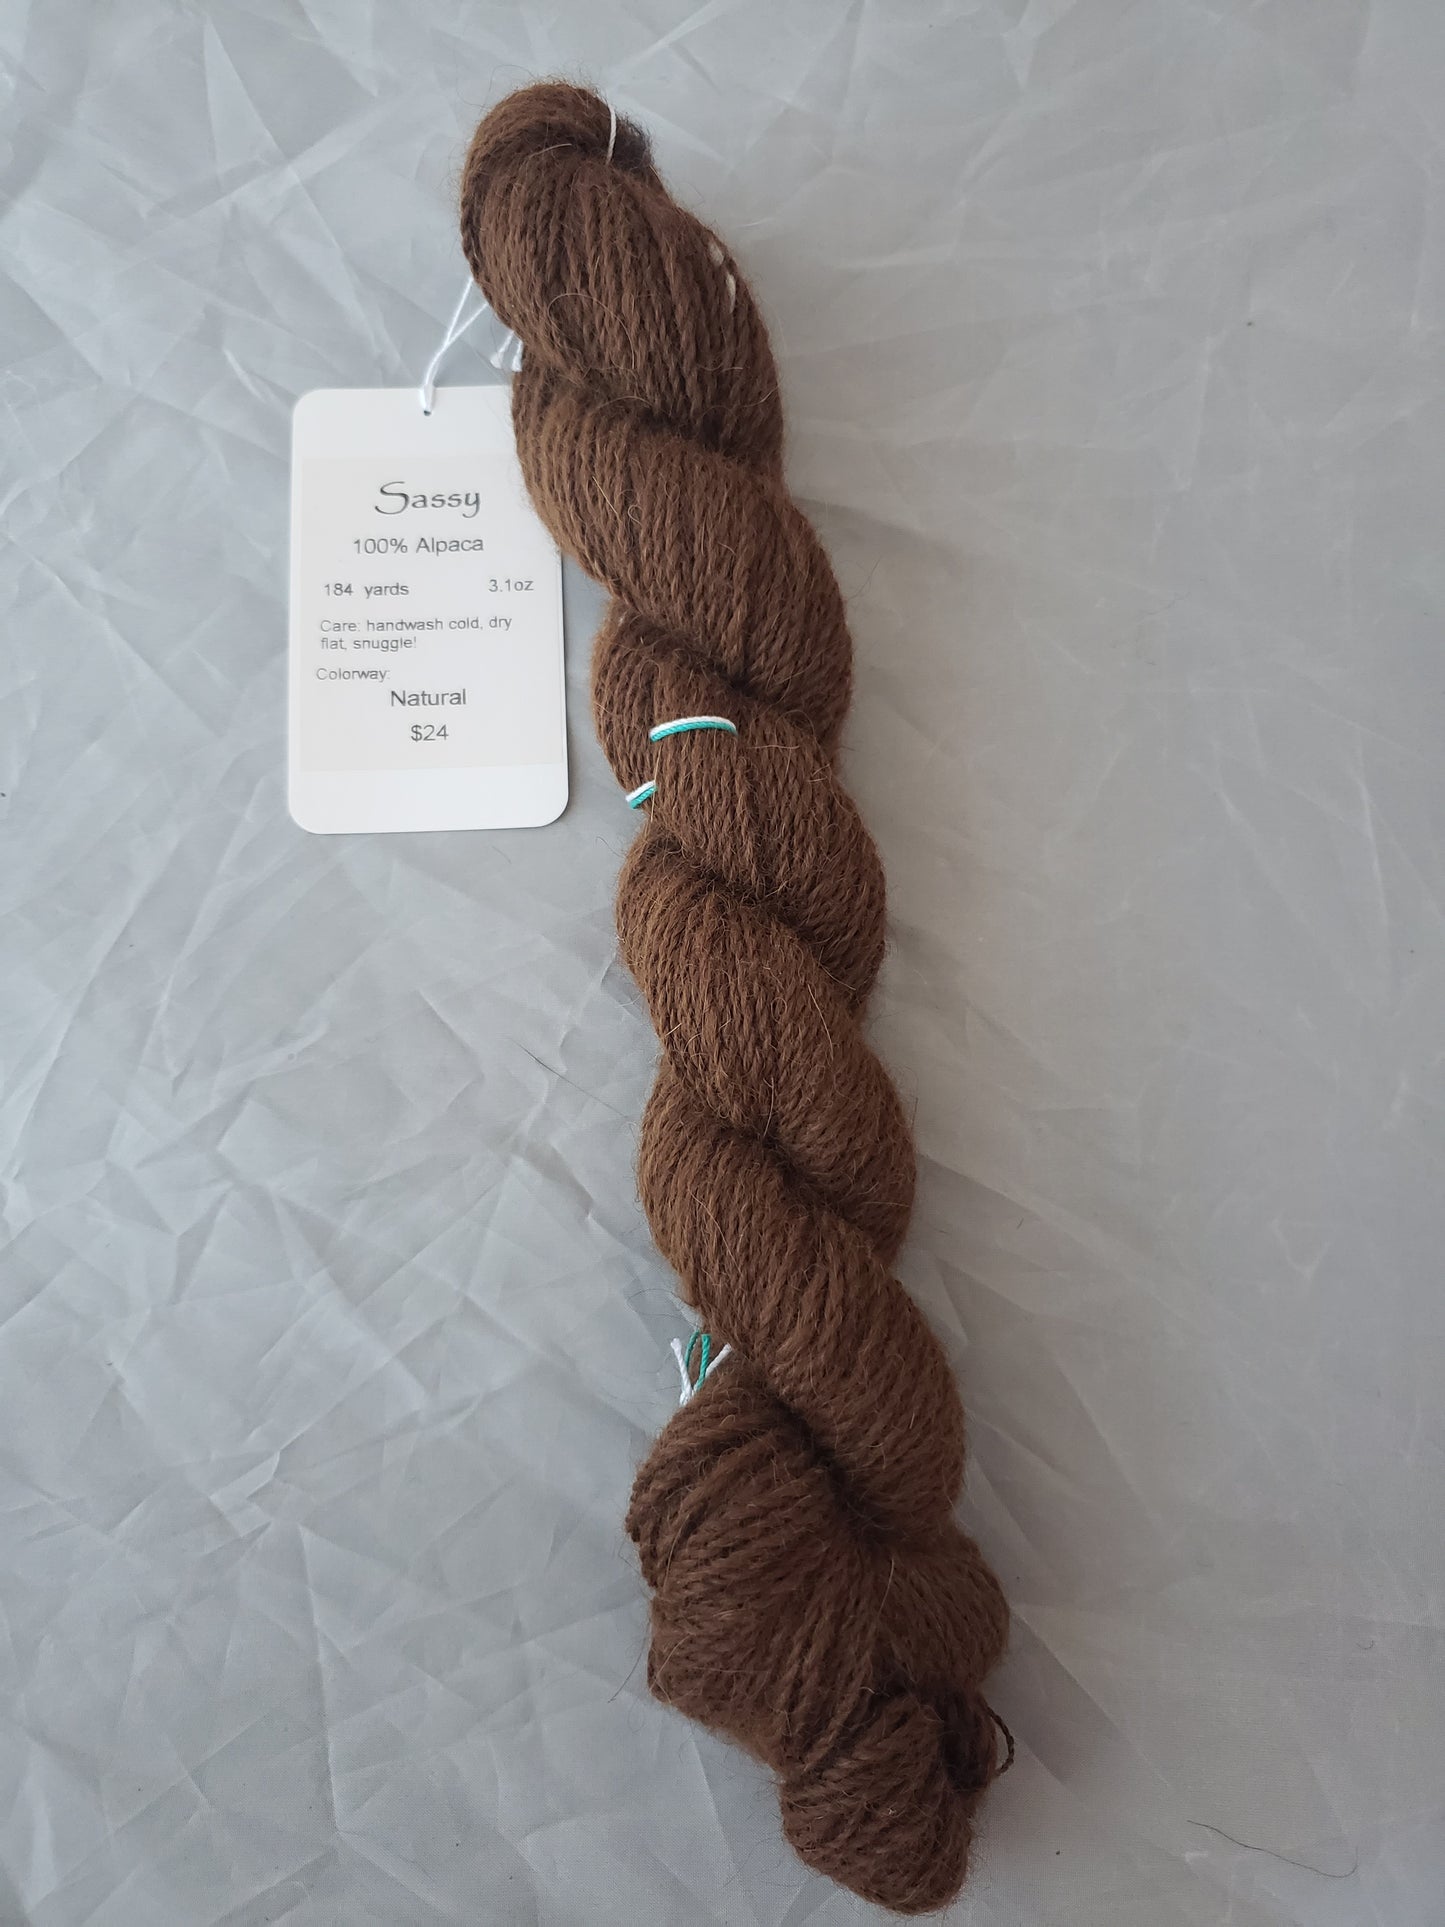 Sassy - Natural alpaca yarn